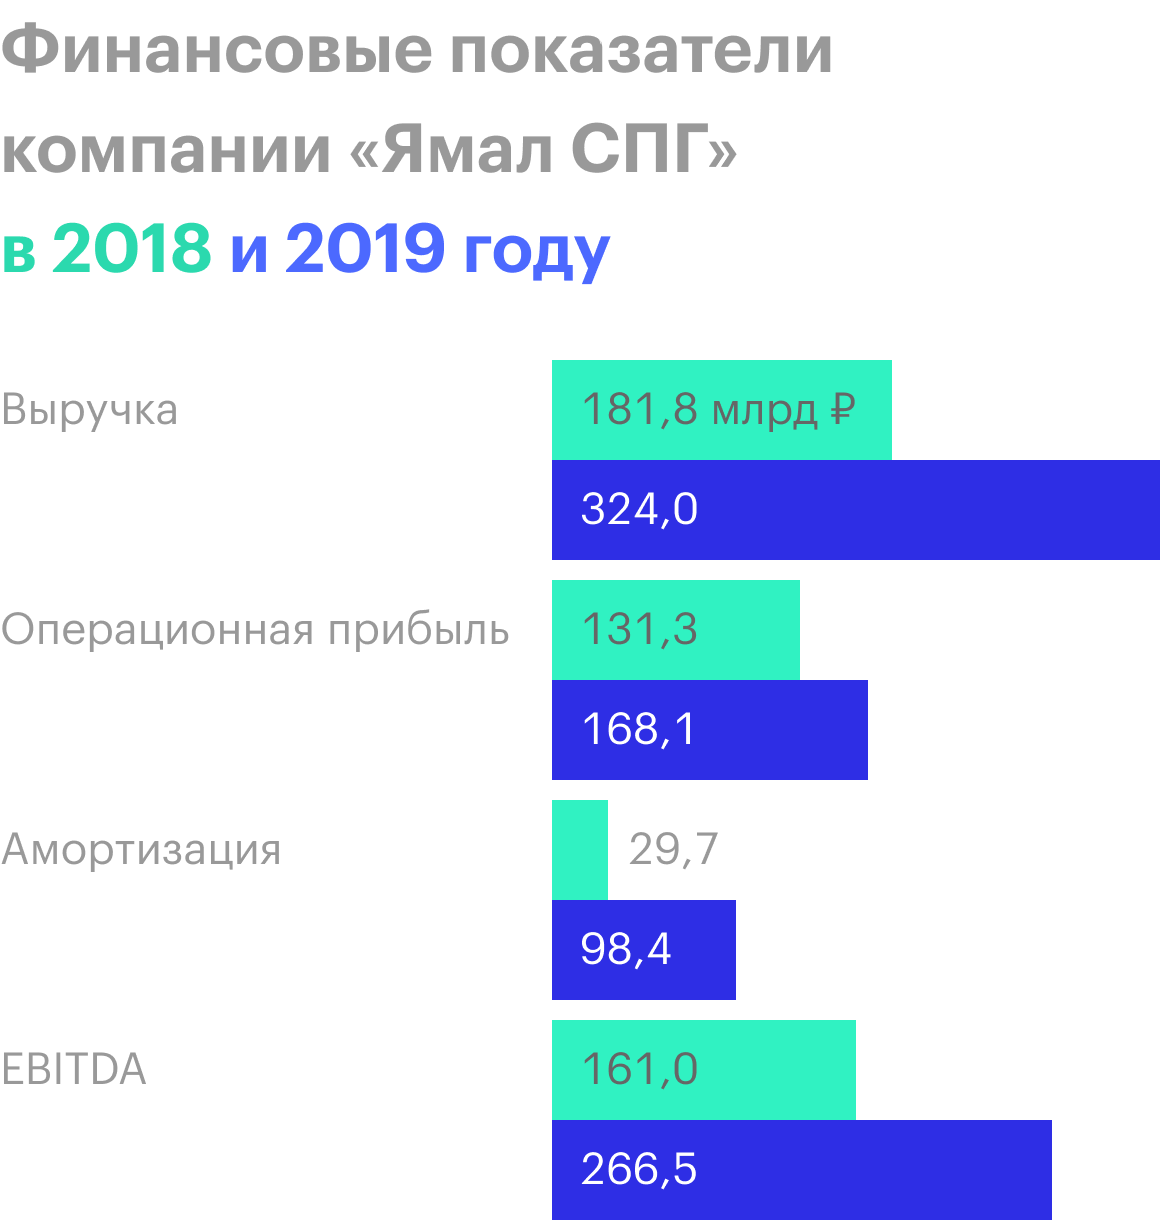 Источник: отчеты «Новатэка» за 2018 и 2019 годы